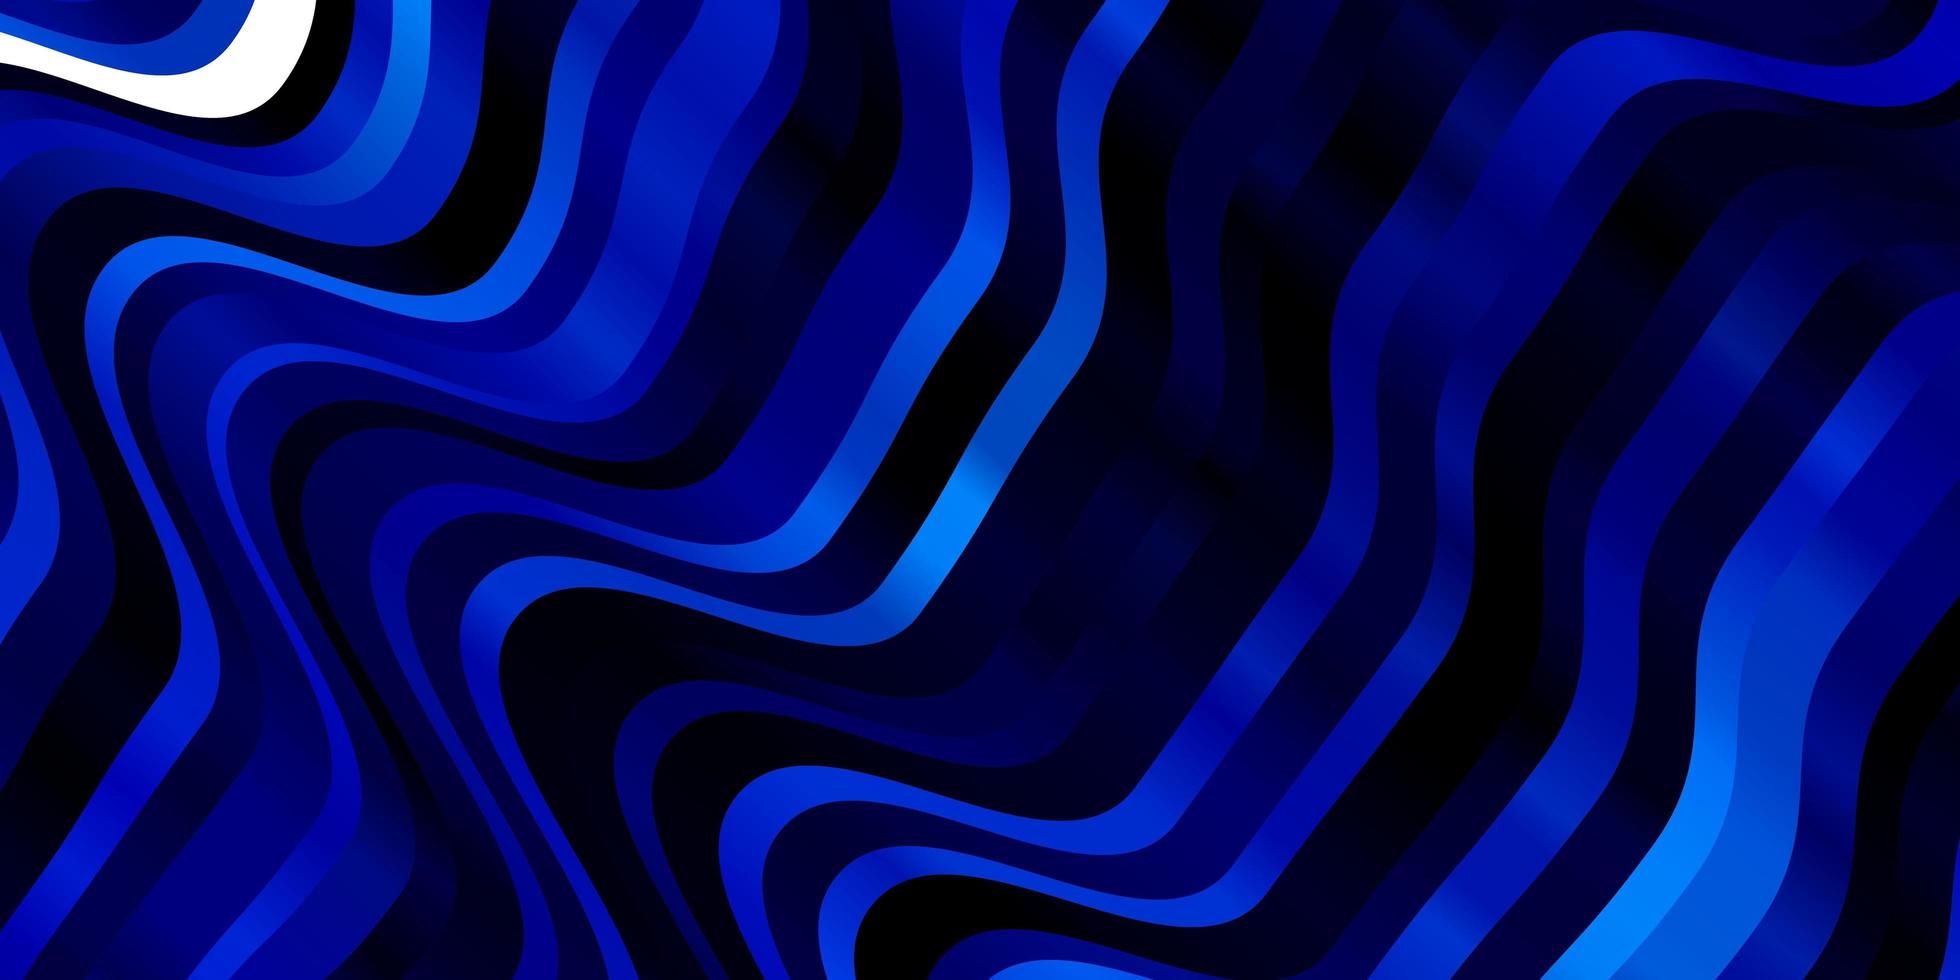 mörkblå vektormall med böjda linjer. vektor